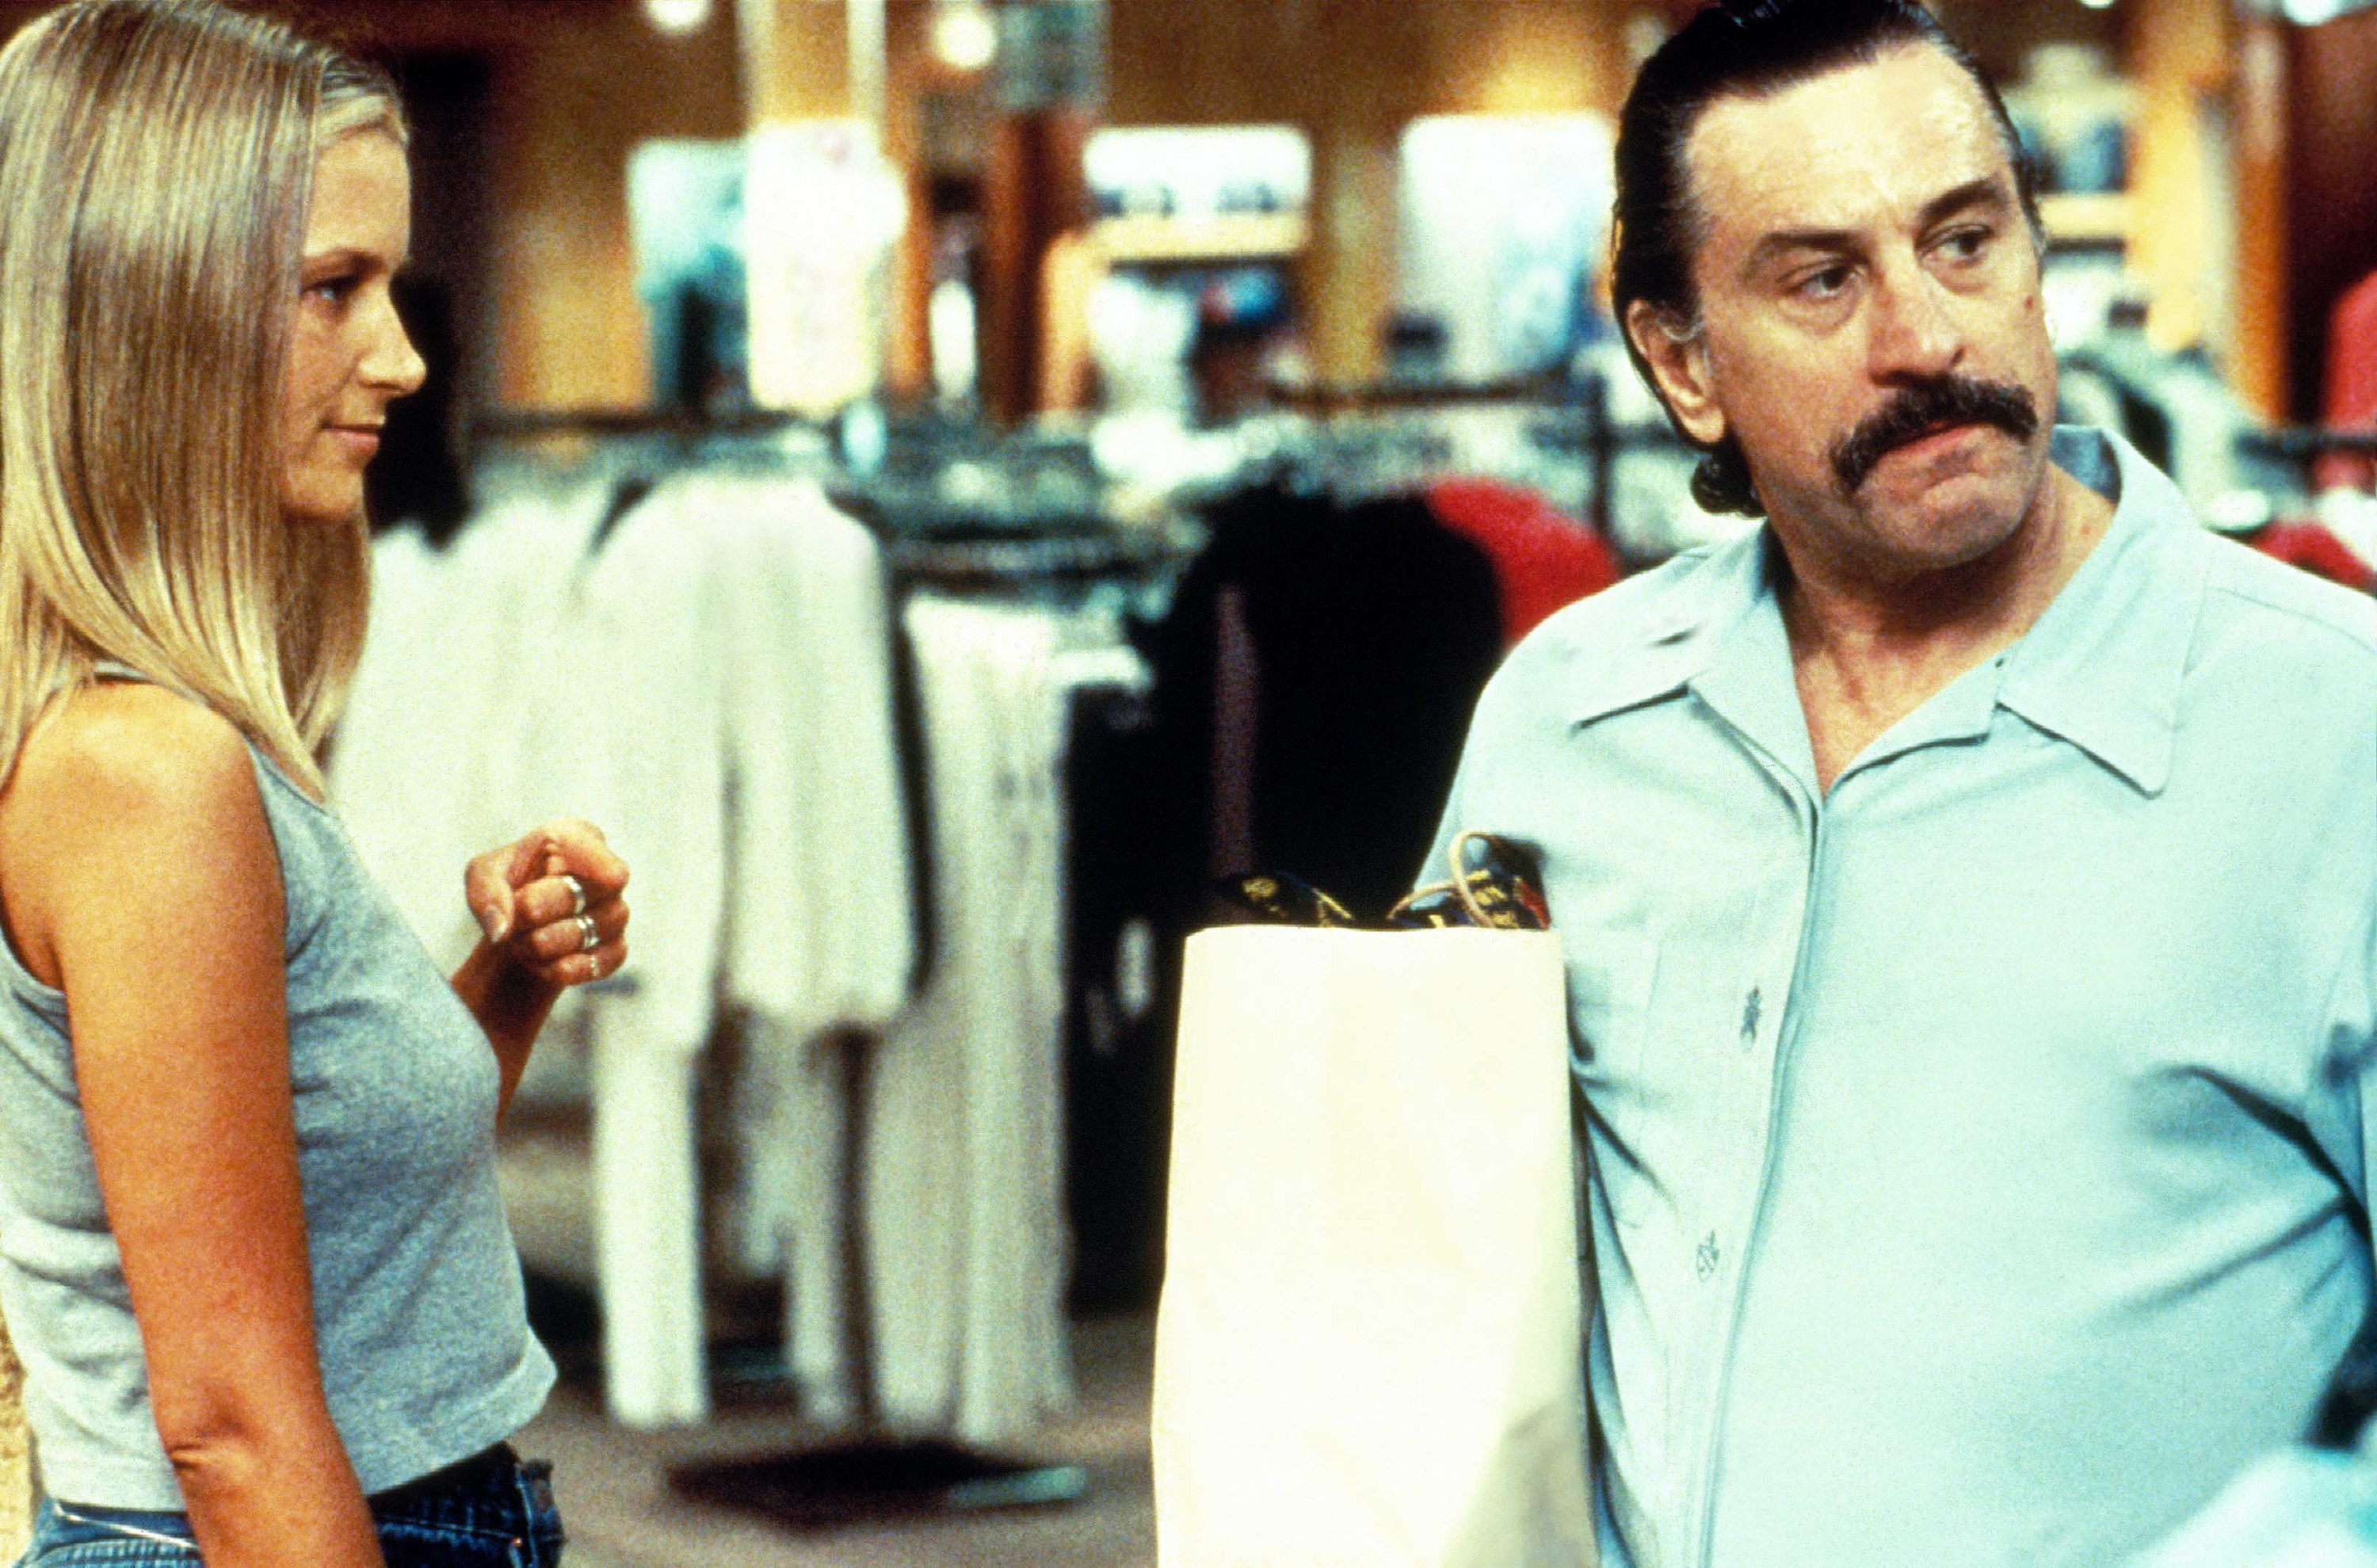 Bridget Fonda and Robert De Niro shop together in a mall